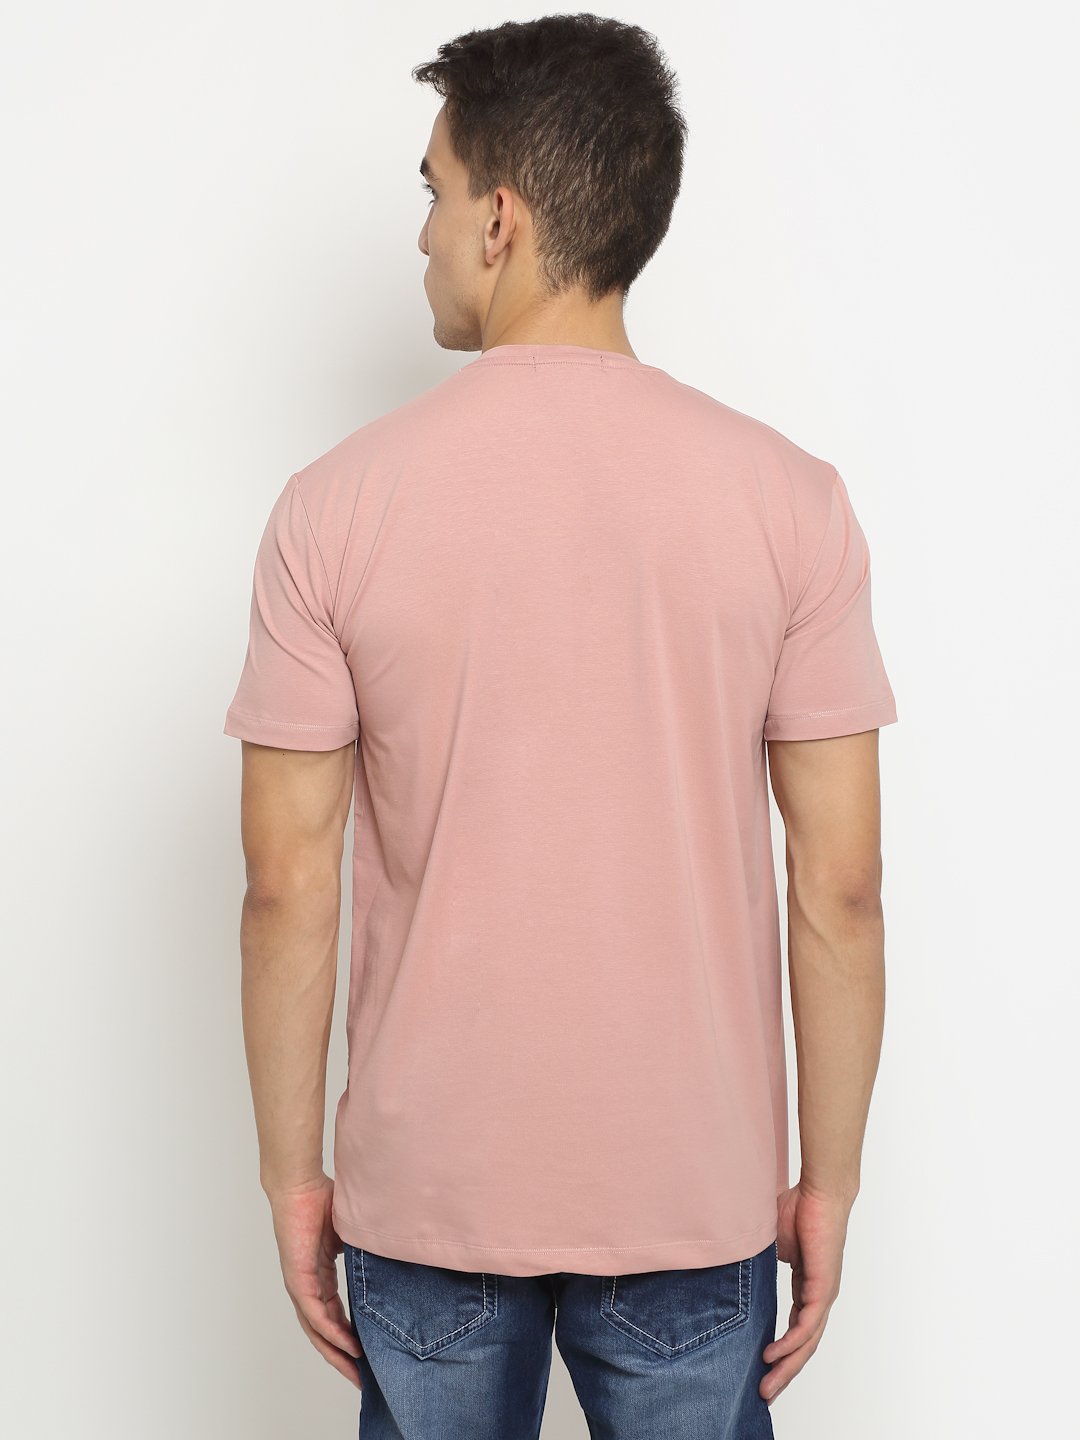 Men Pink Round Neck Cotton Solid T-Shirt